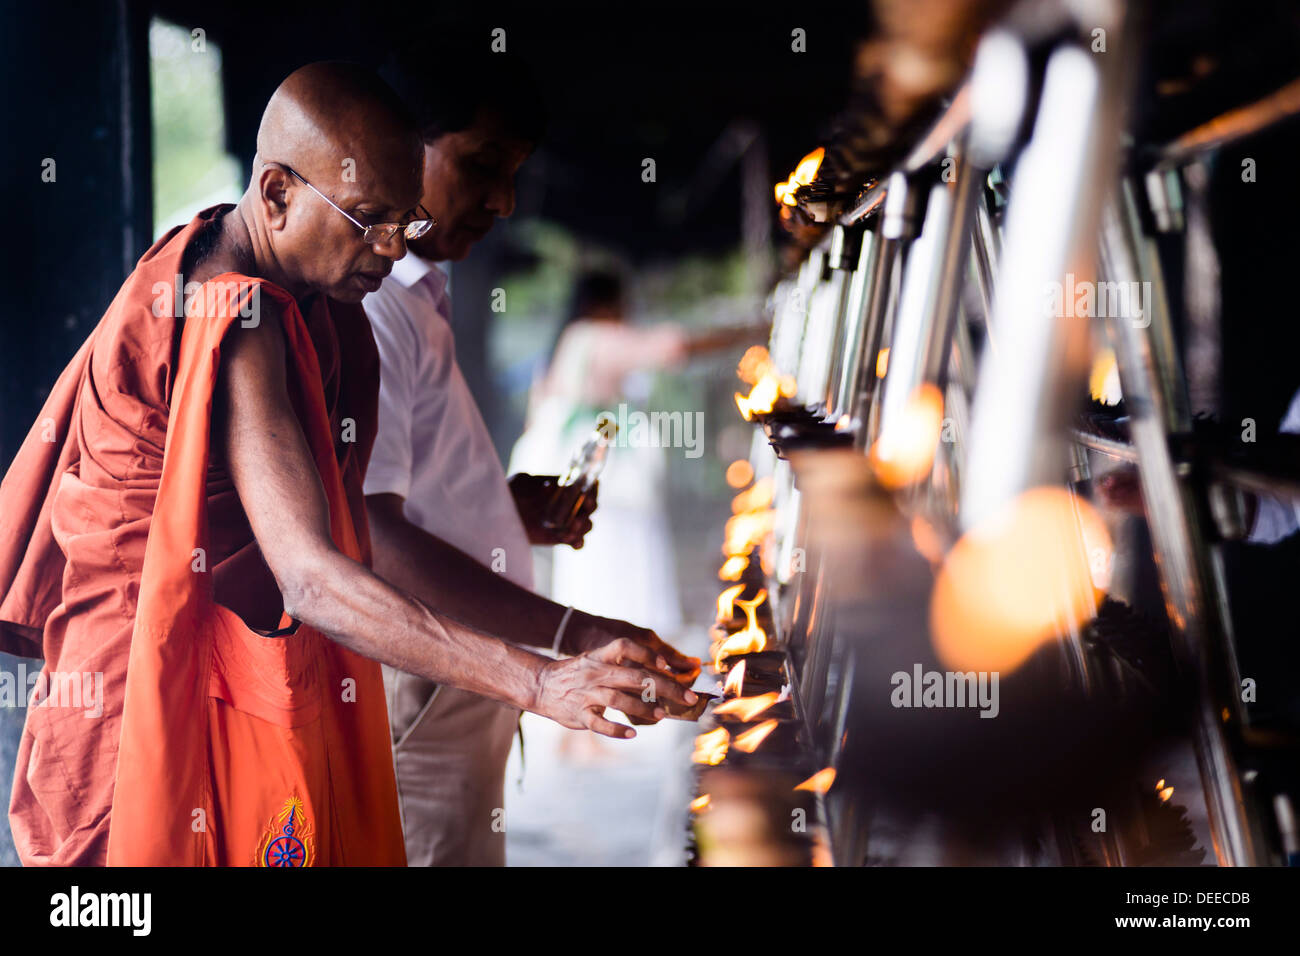 Buddhist monk praying at Sri Maha Bodhi in the Mahavihara (The Great Monastery), Anuradhapura, Sri Lanka, Asia Stock Photo